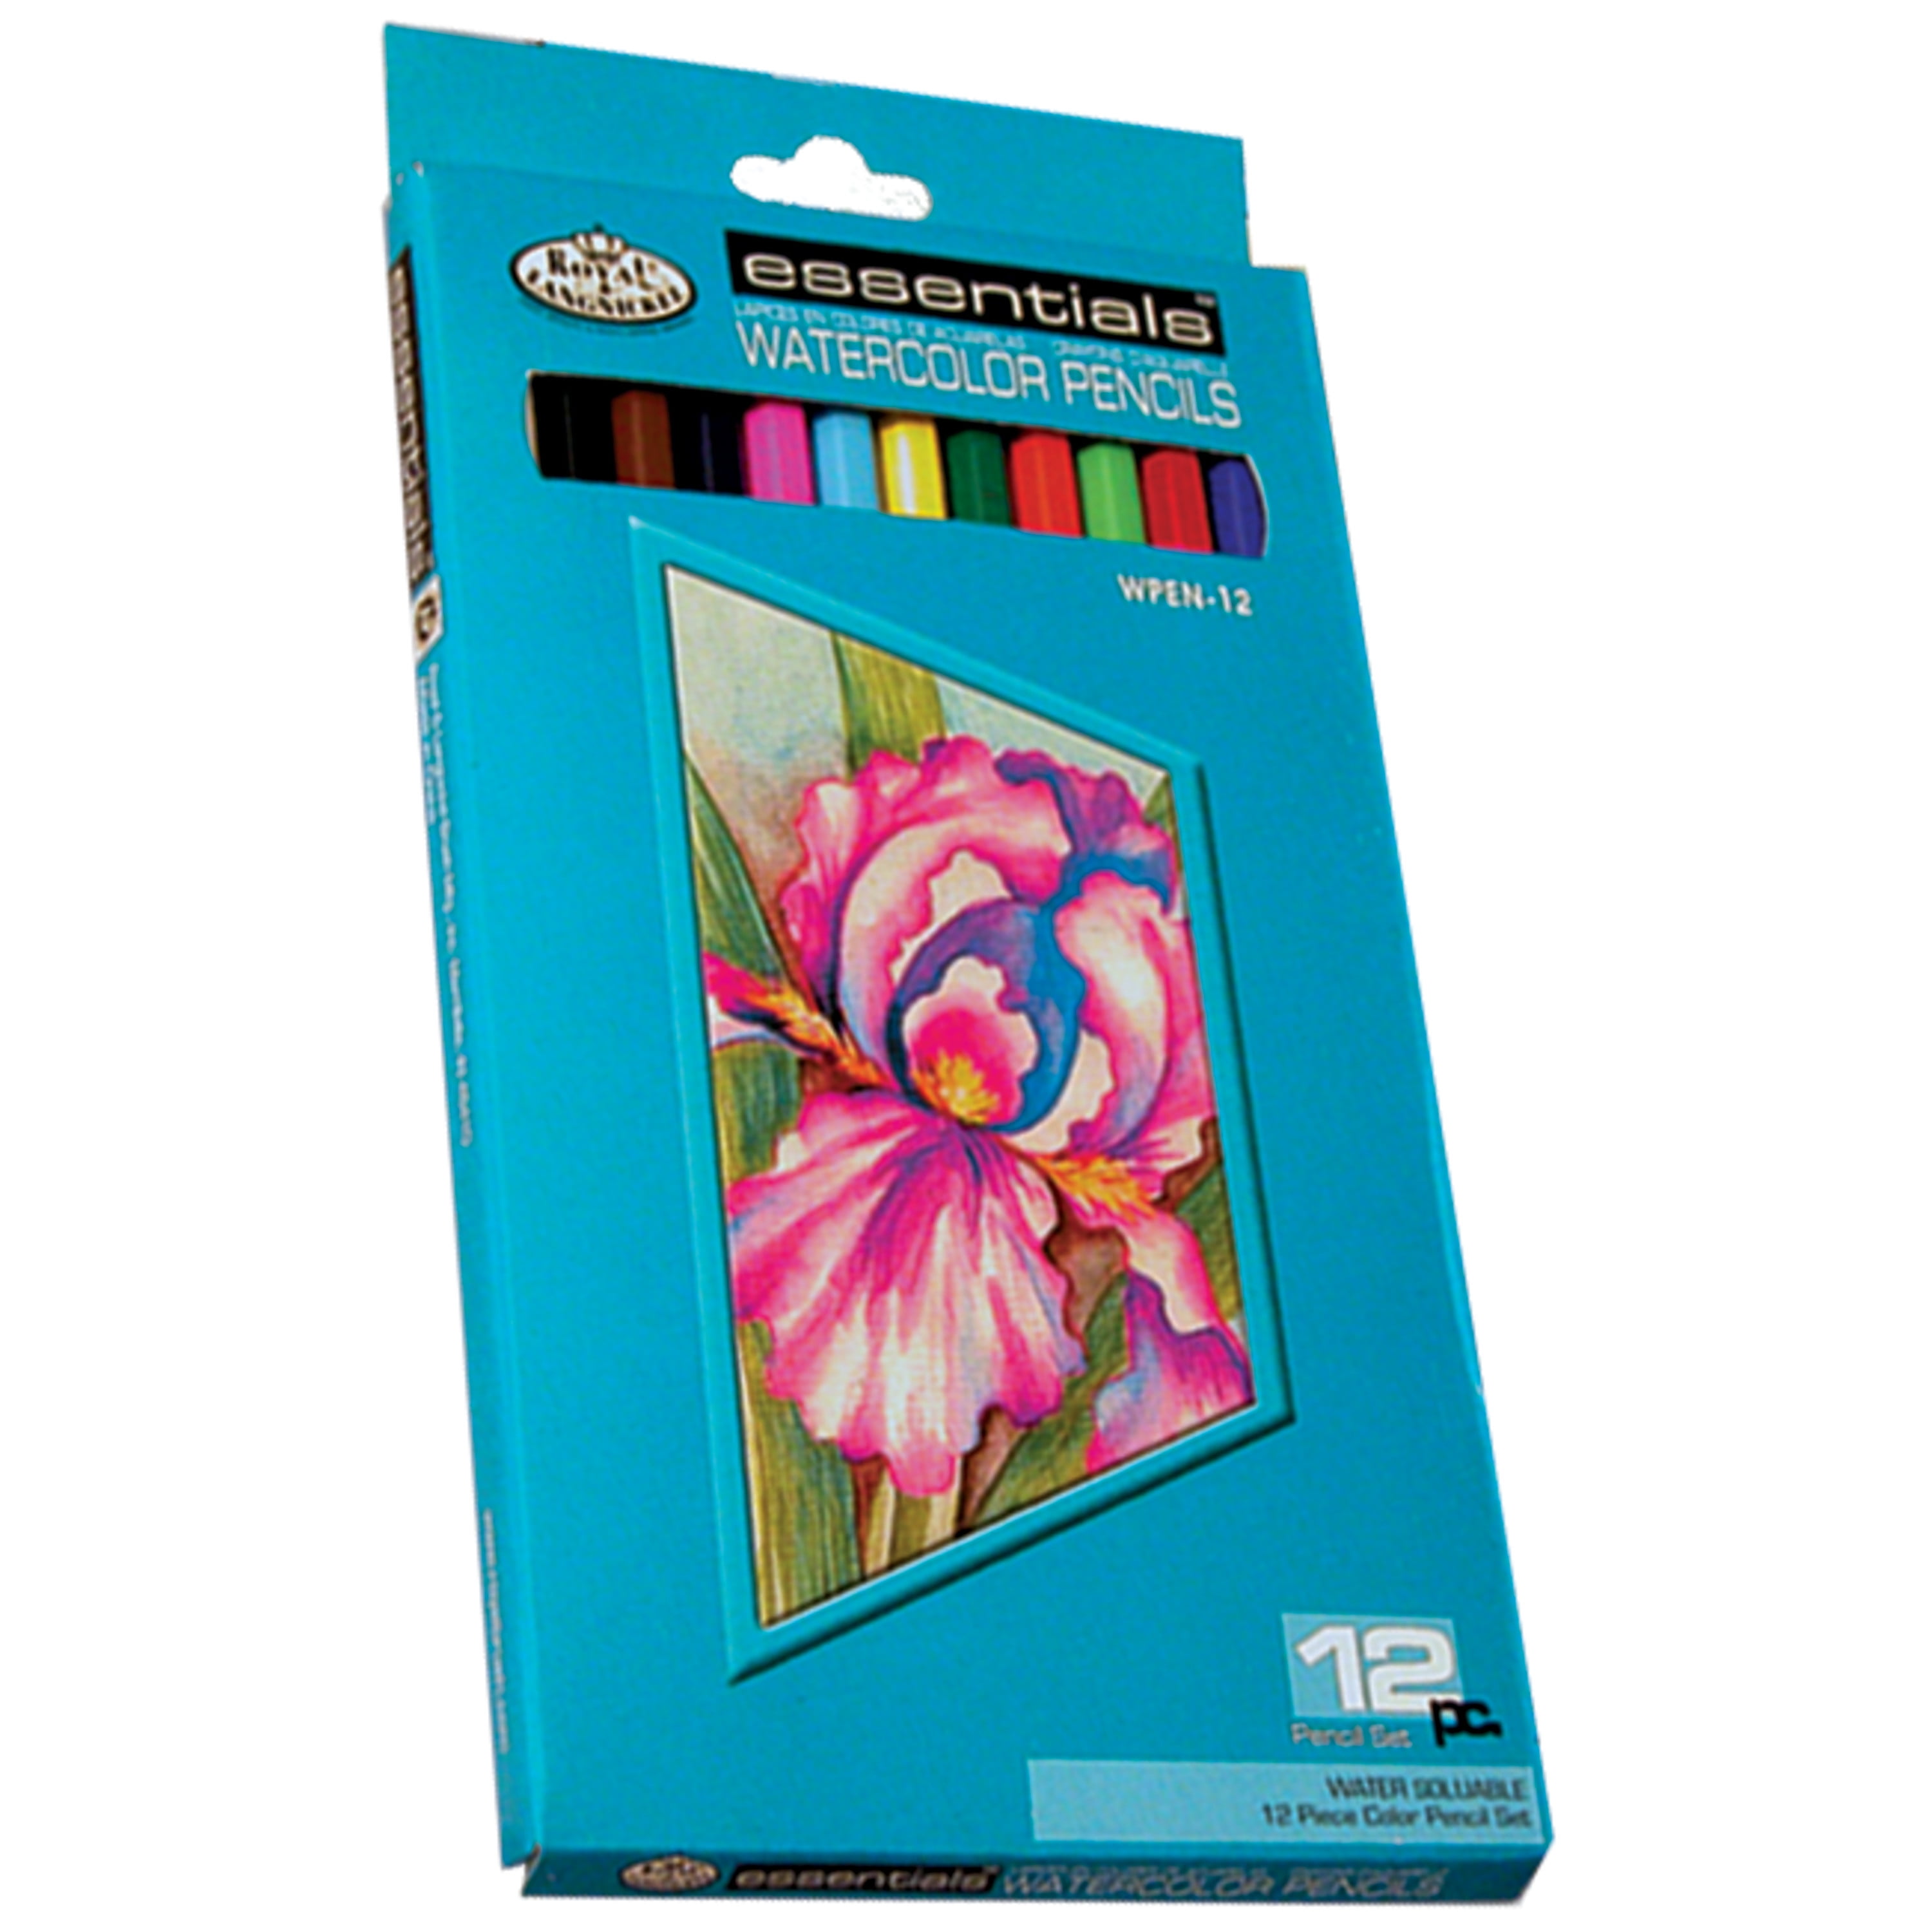 Royal Brush Essentials Watercolor Pencil Drawing Set - Walmart.com